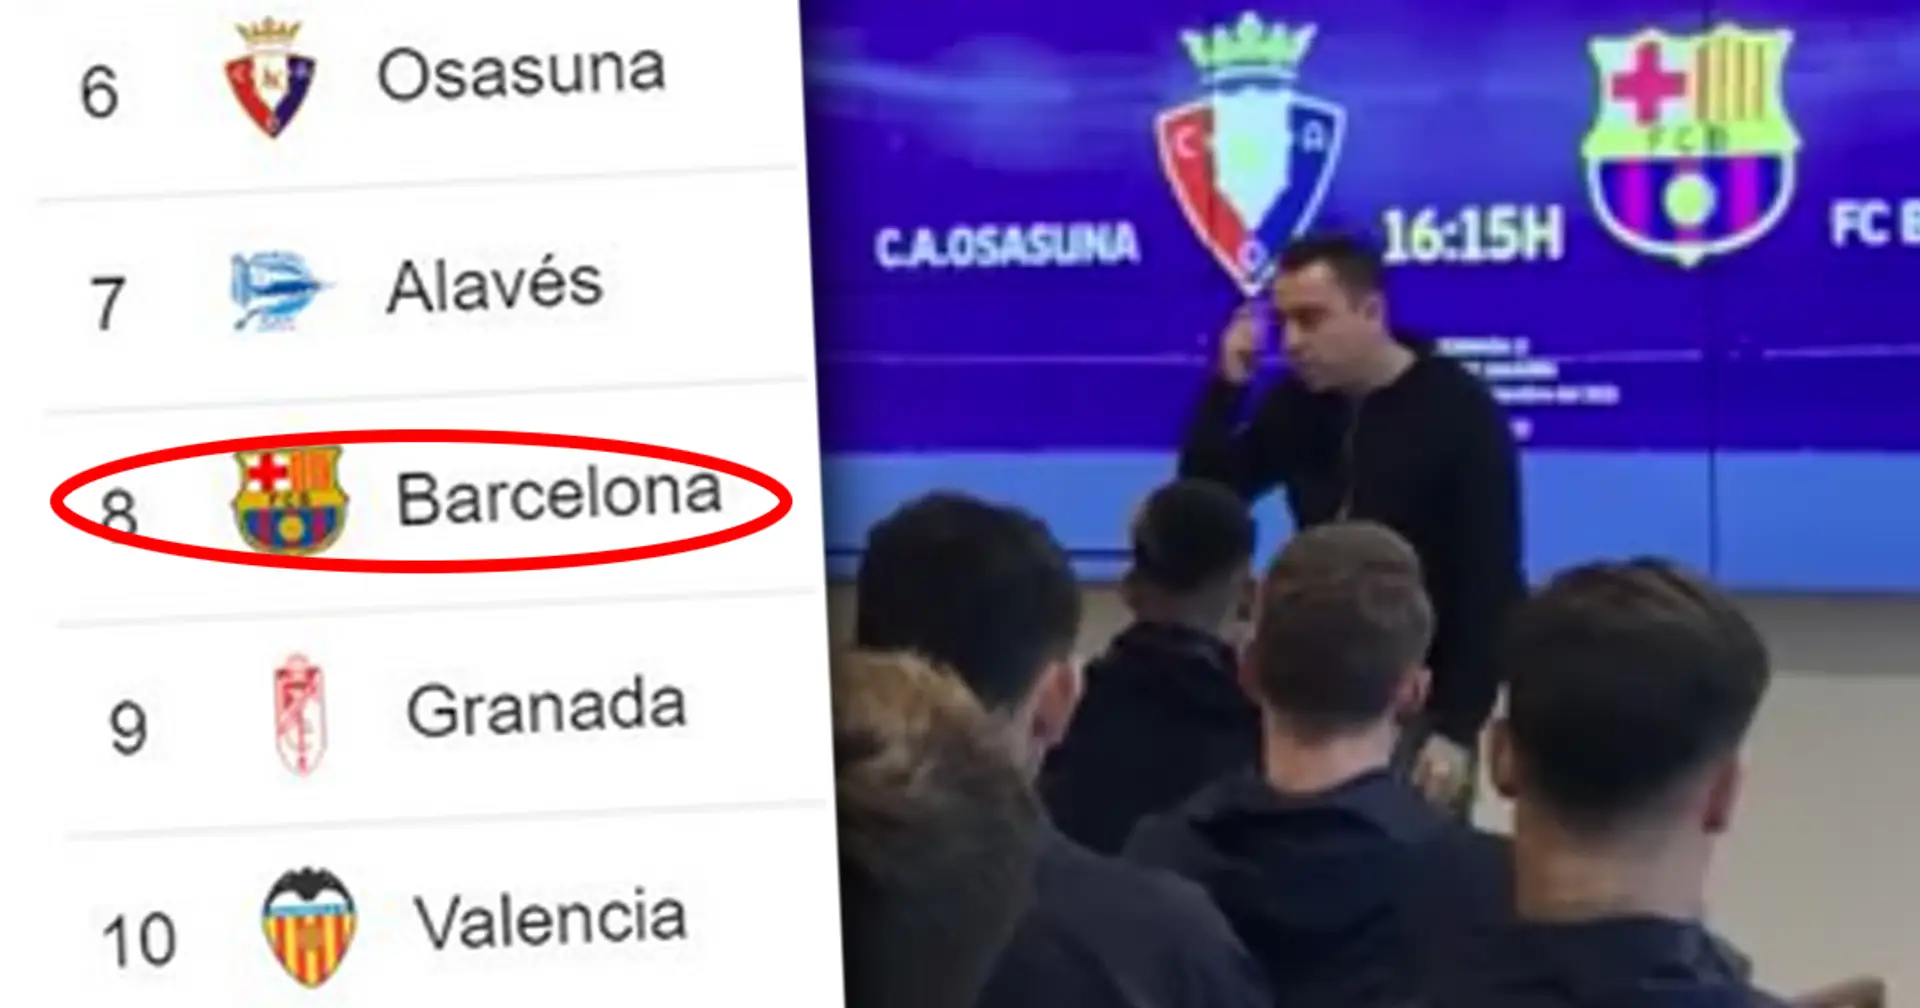 "Legt euch nicht mit mir an, Jungs!": Xavis leidenschaftliche Rede vor einem wichtigen Duell in La Liga enthüllt